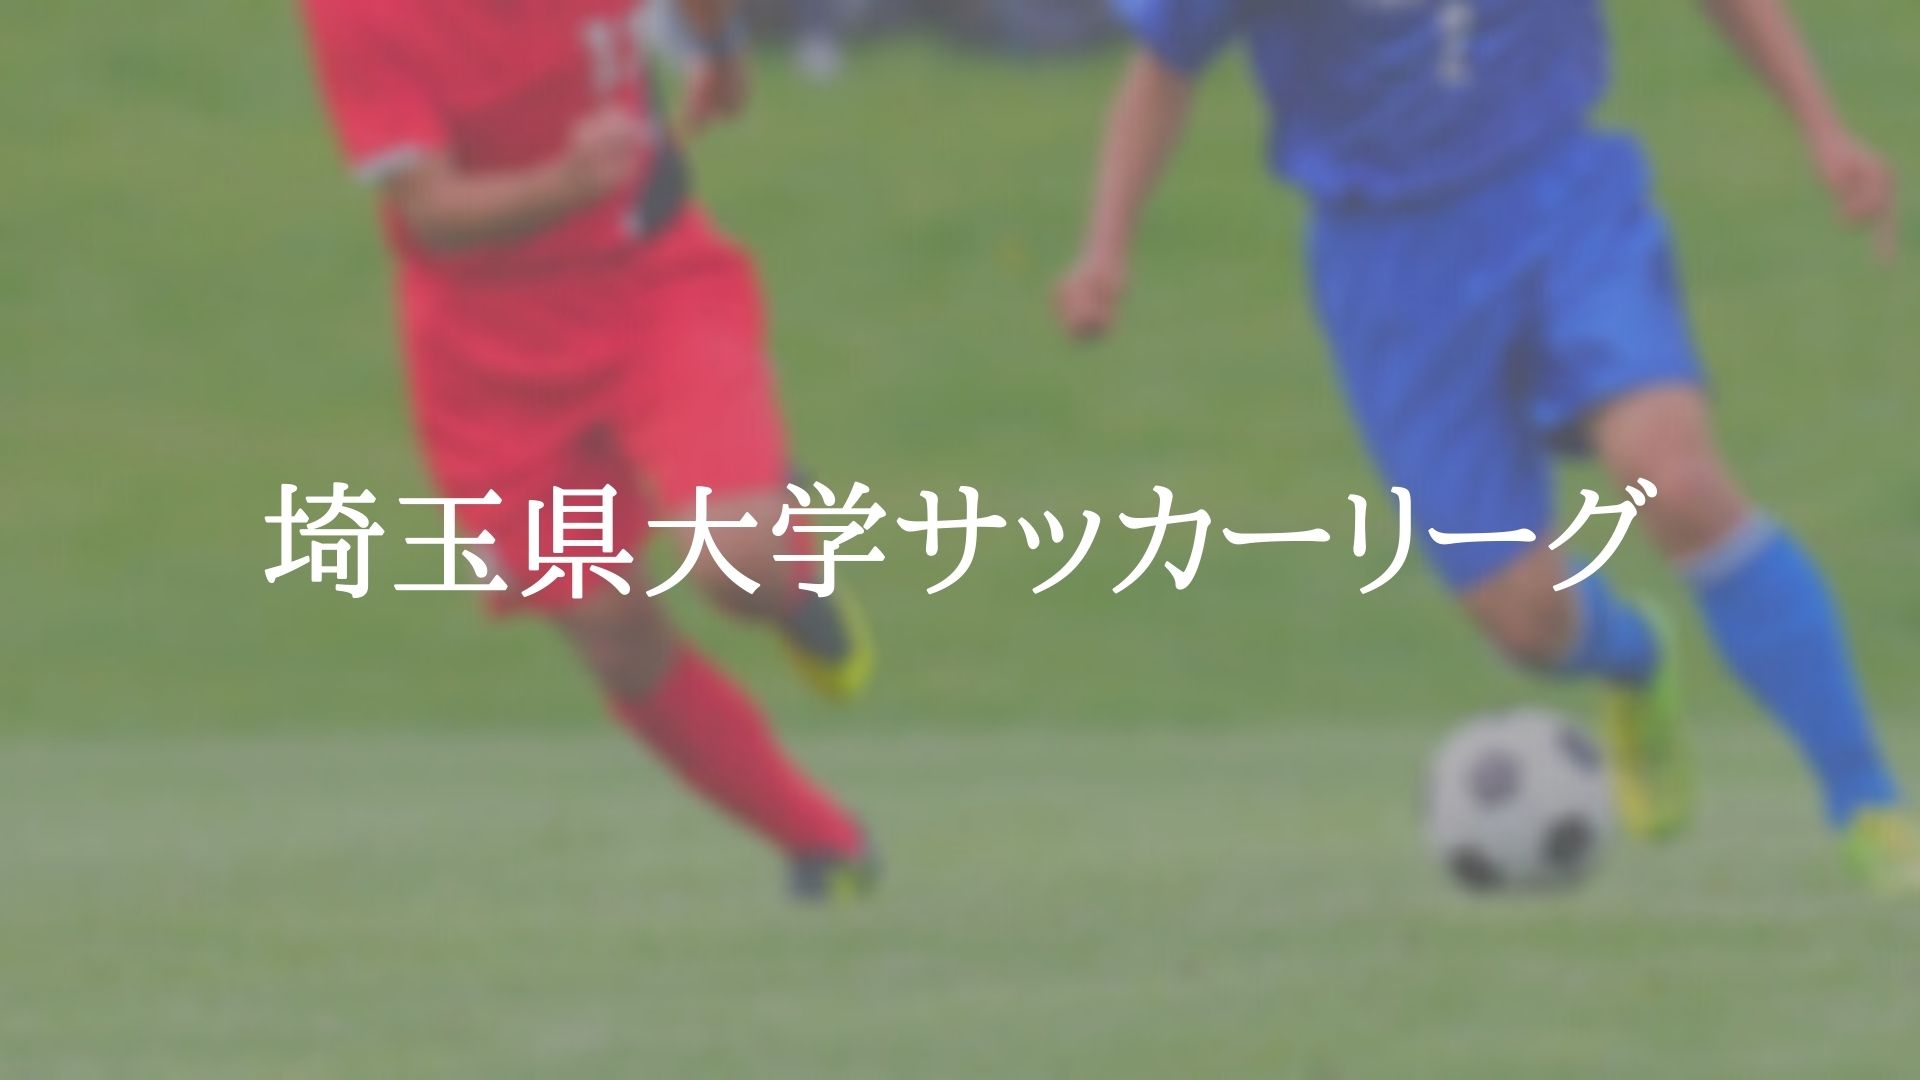 埼玉県大学サッカーリーグ アスリートバンク サッカー